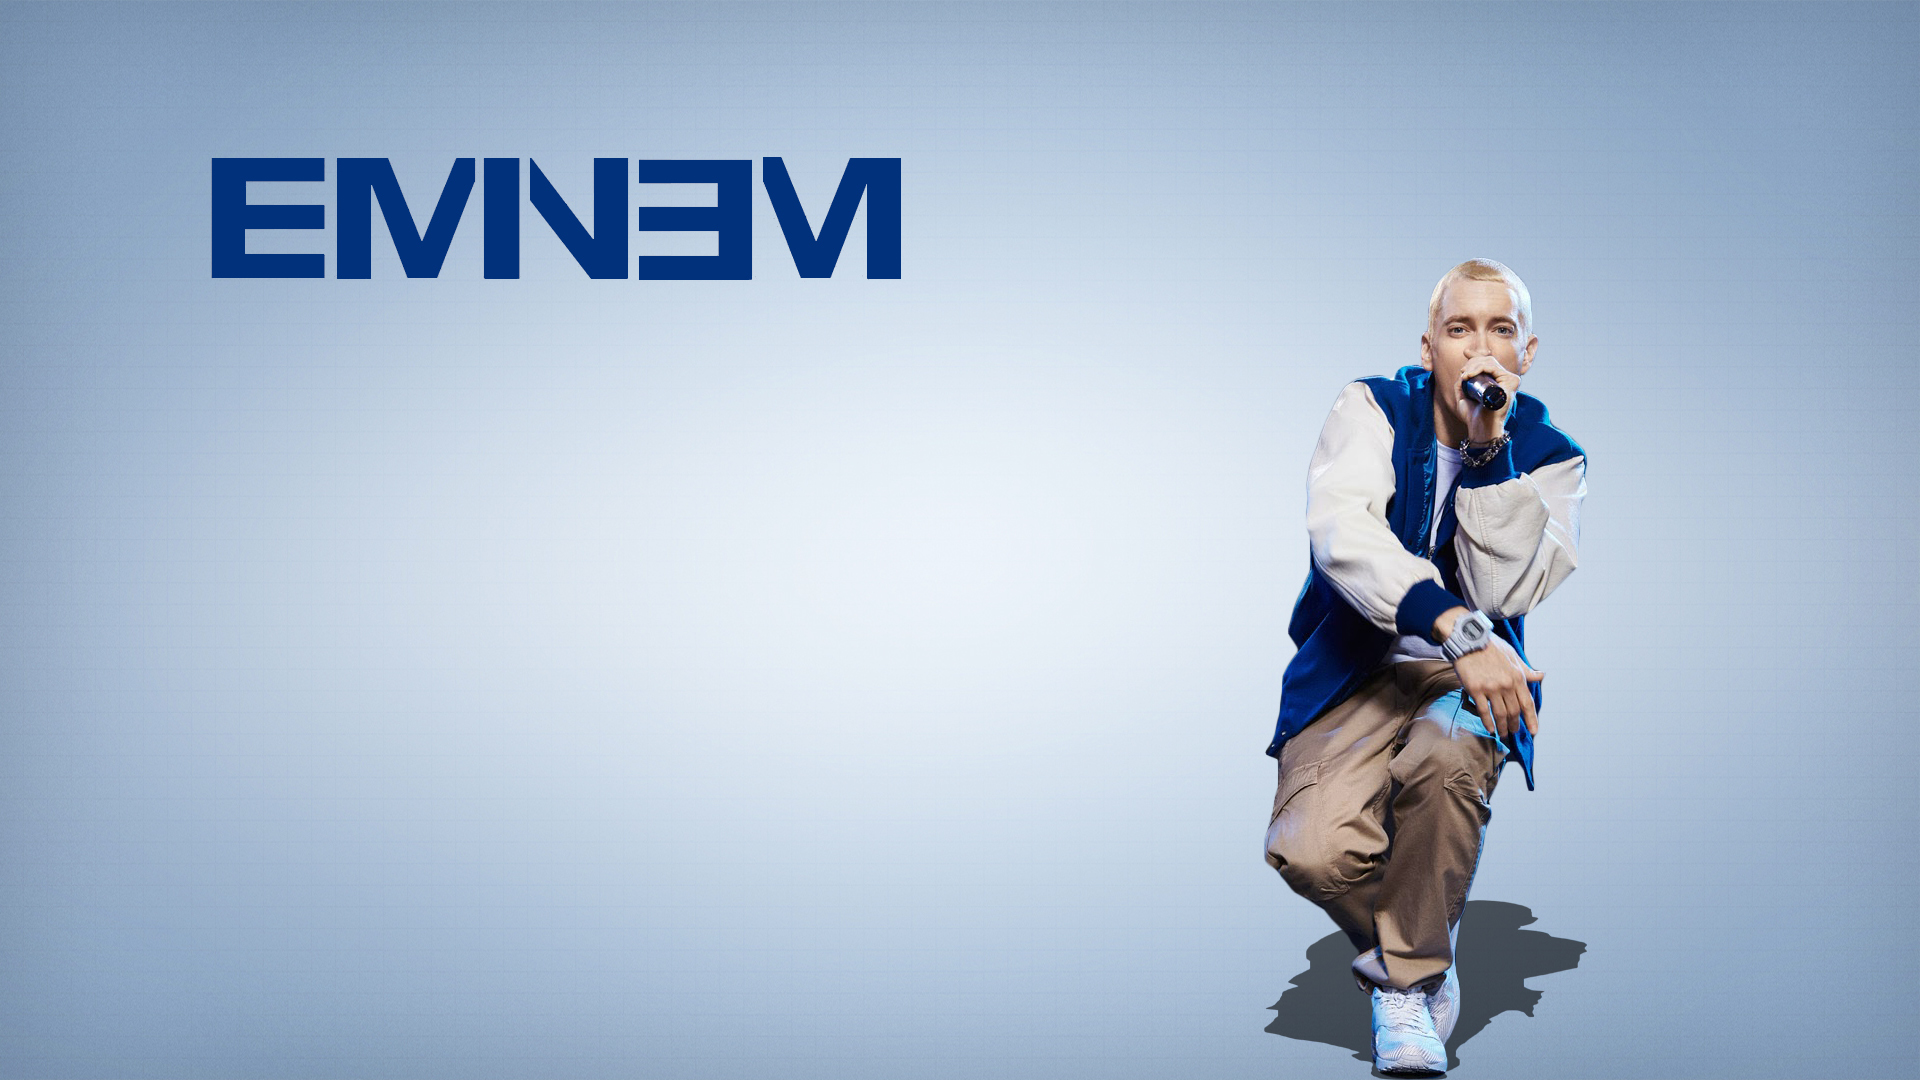 HD Background Eminem Singer Blue Logo Wallpaper